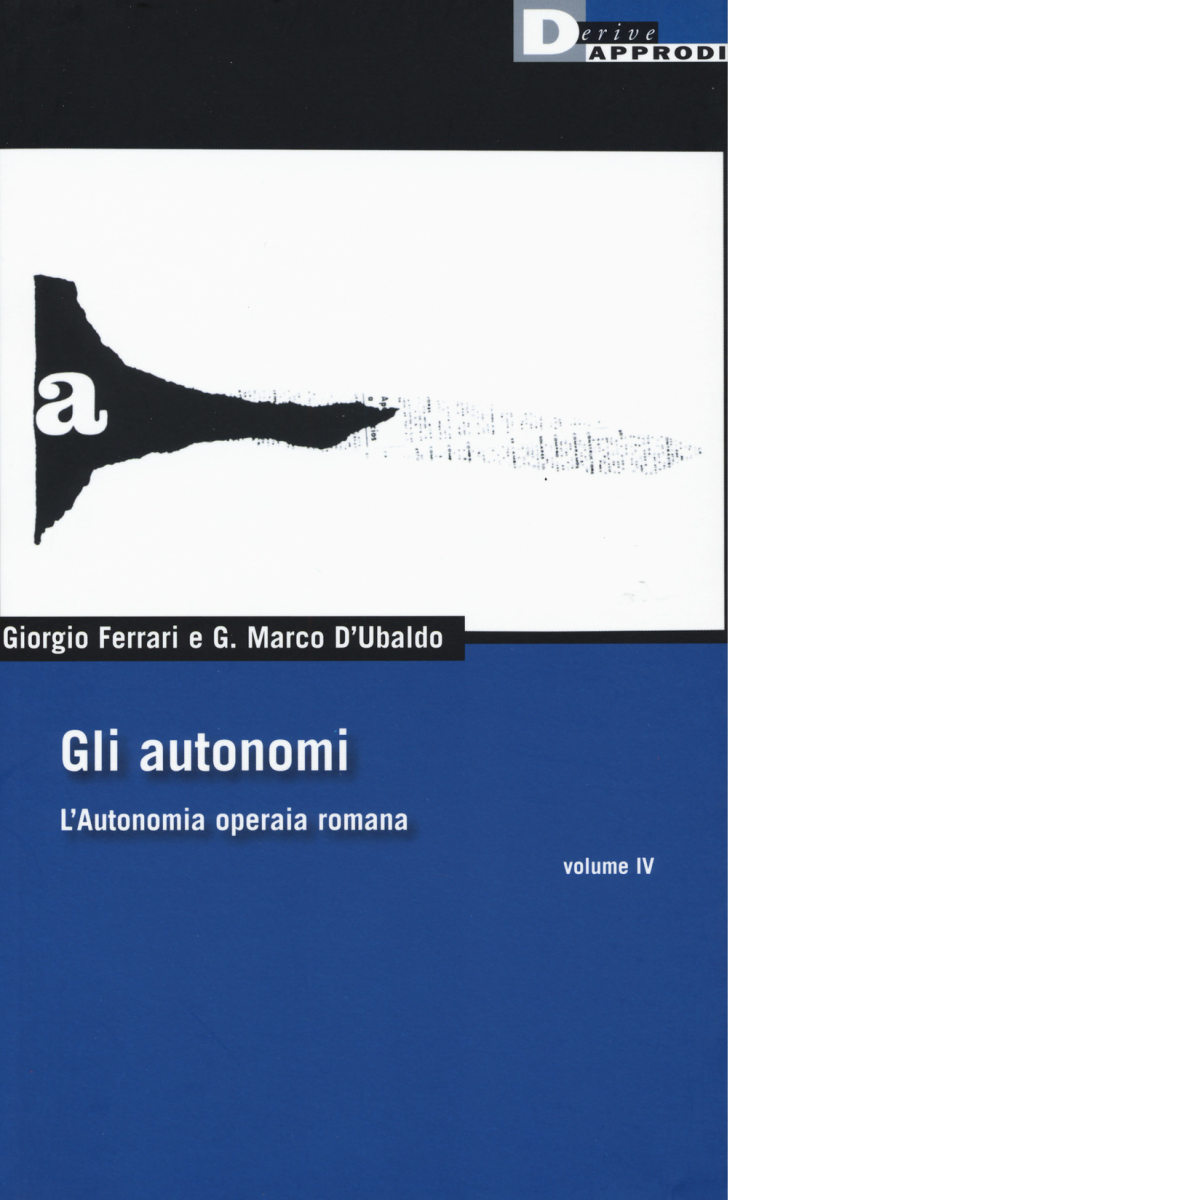 Gli autonomi vol. IV di G. MARCO D'UBALDO, GIORGIO FERRARI - DeriveApprodi, 2017 libro usato